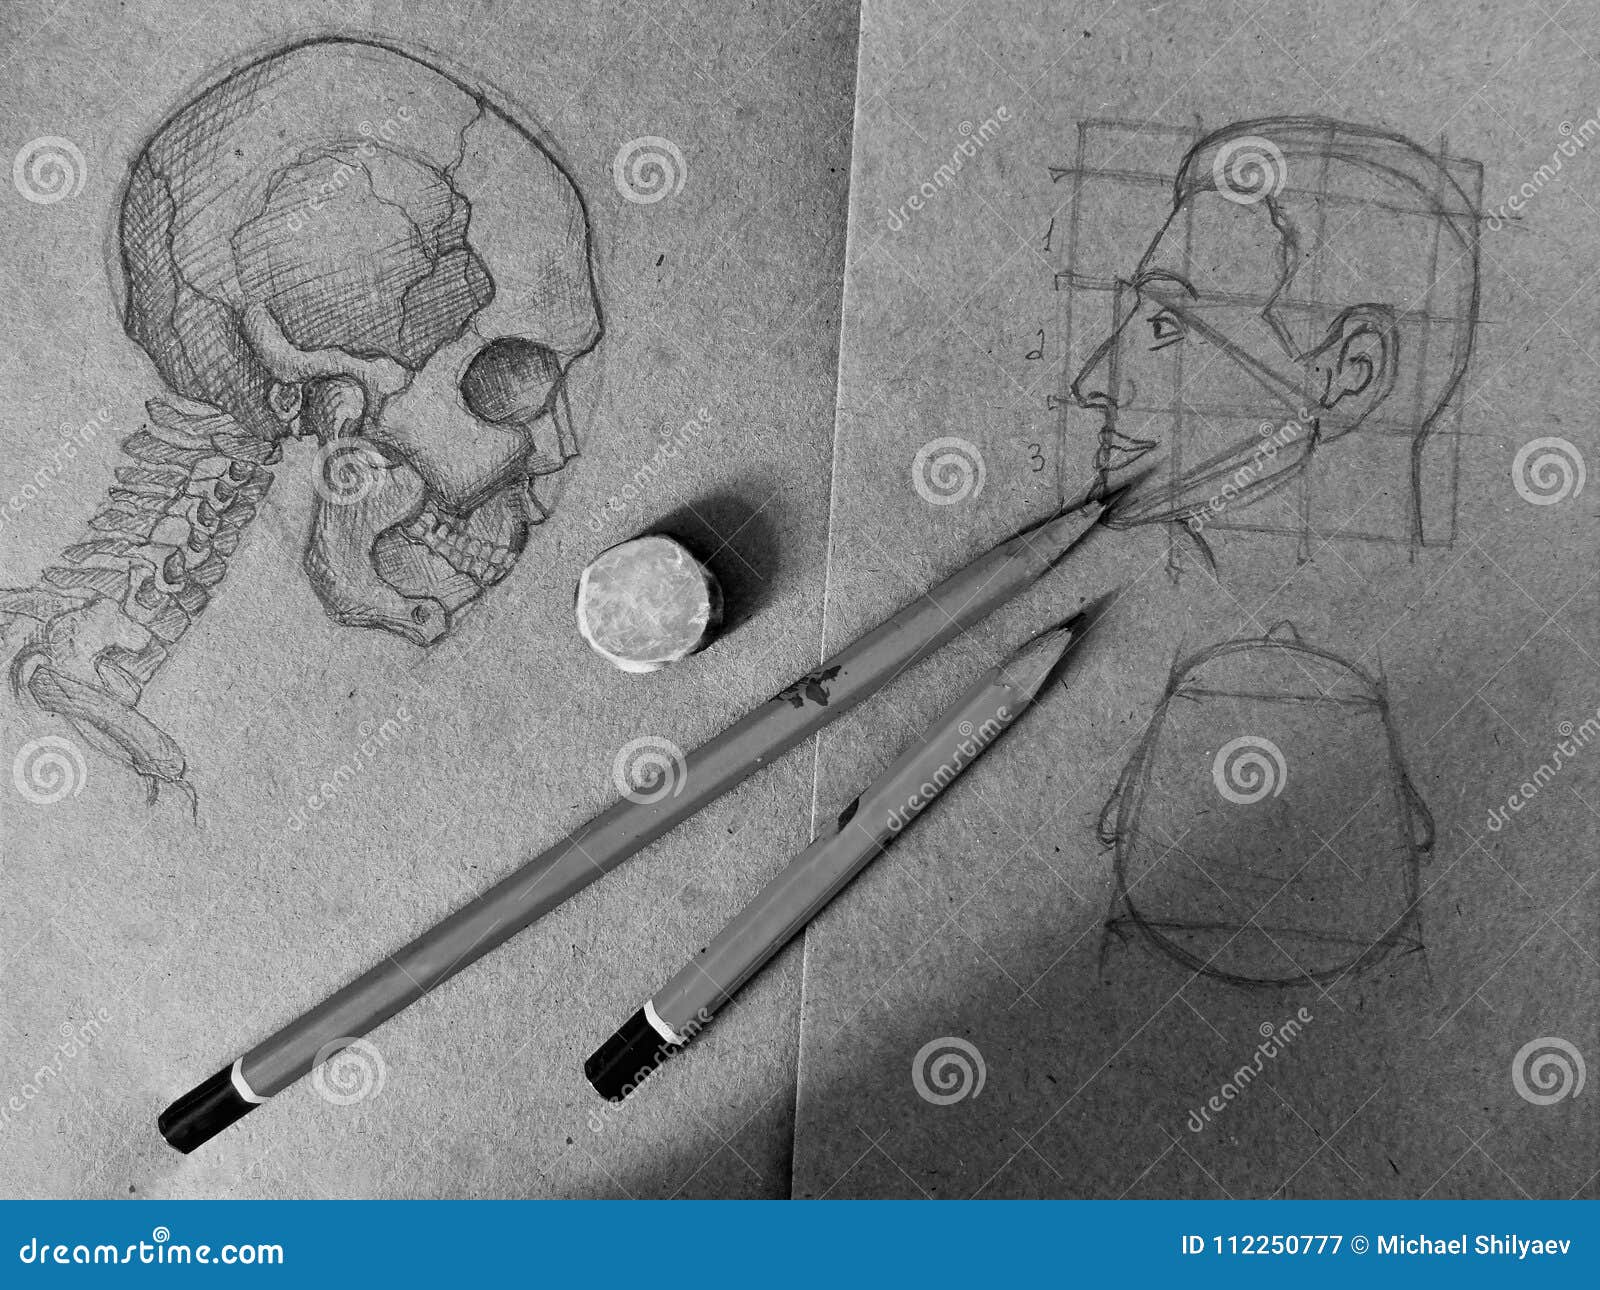 Disegni A Matita Lo Schizzo Di Un Cranio E Di Una Testa Umana Nel Vecchio Taccuino Immagine Stock Immagine Di Mano Corpo